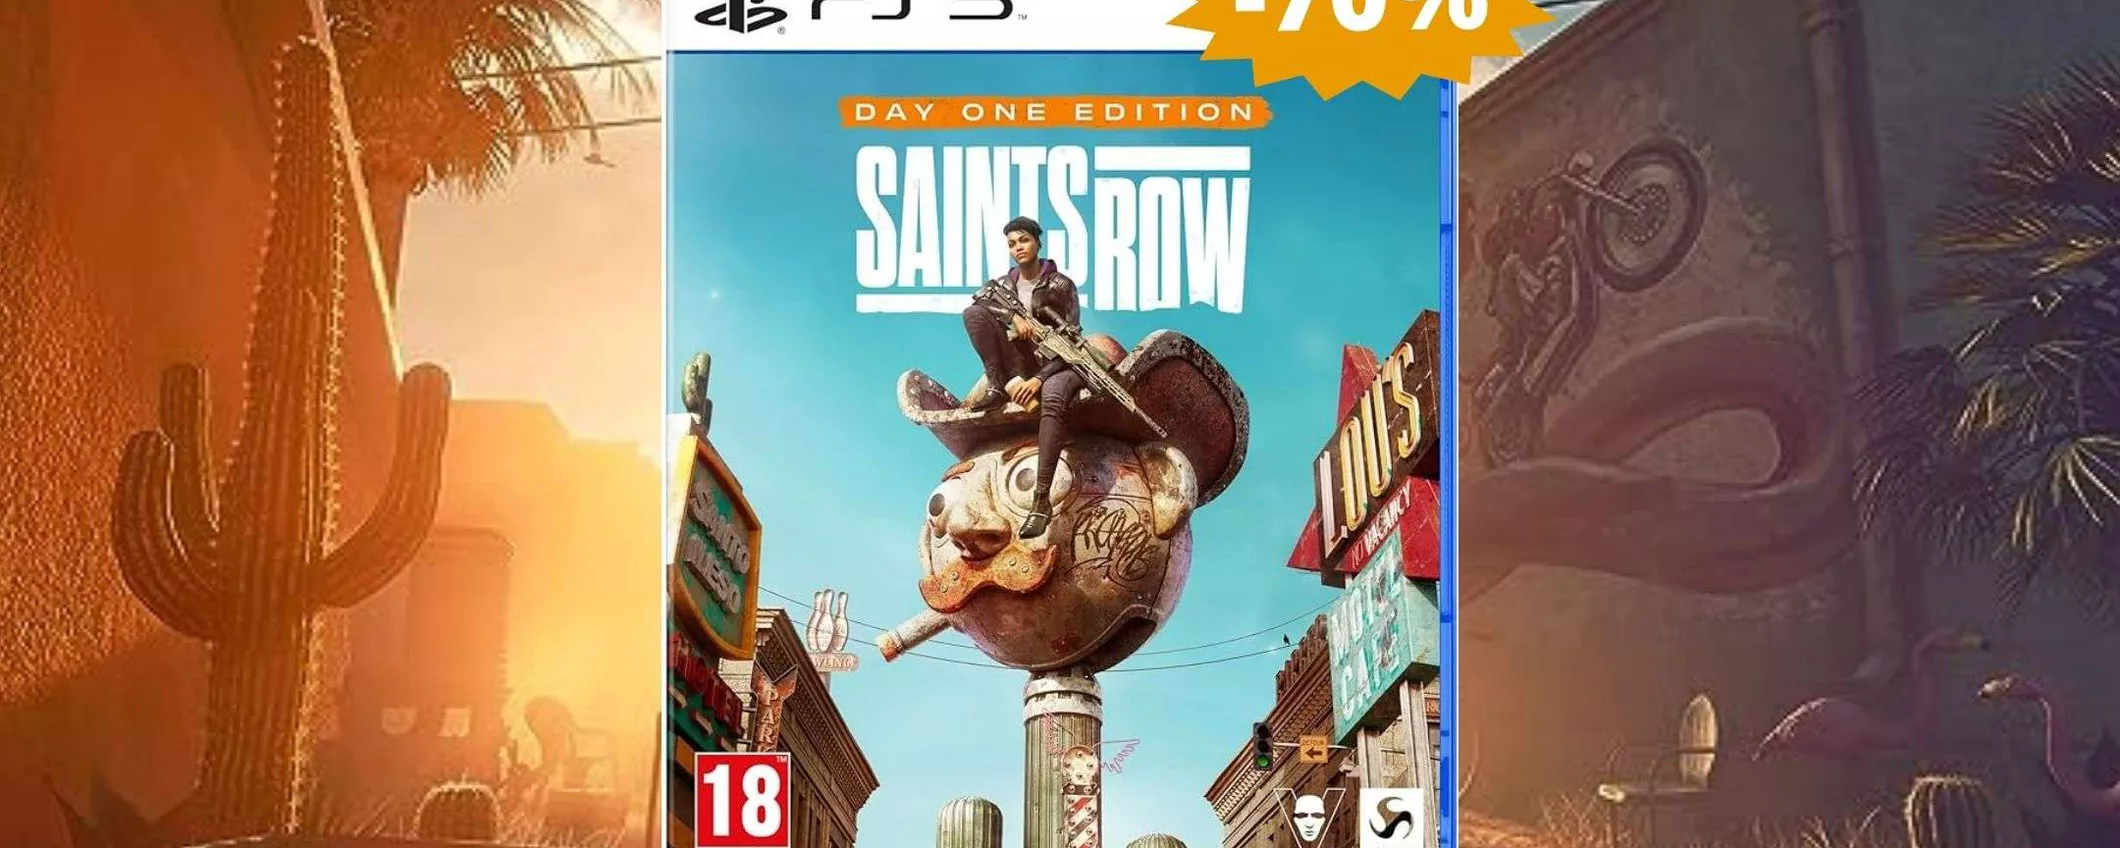 Saints Row per PS5: affare IMPERDIBILE su Amazon (-70%)